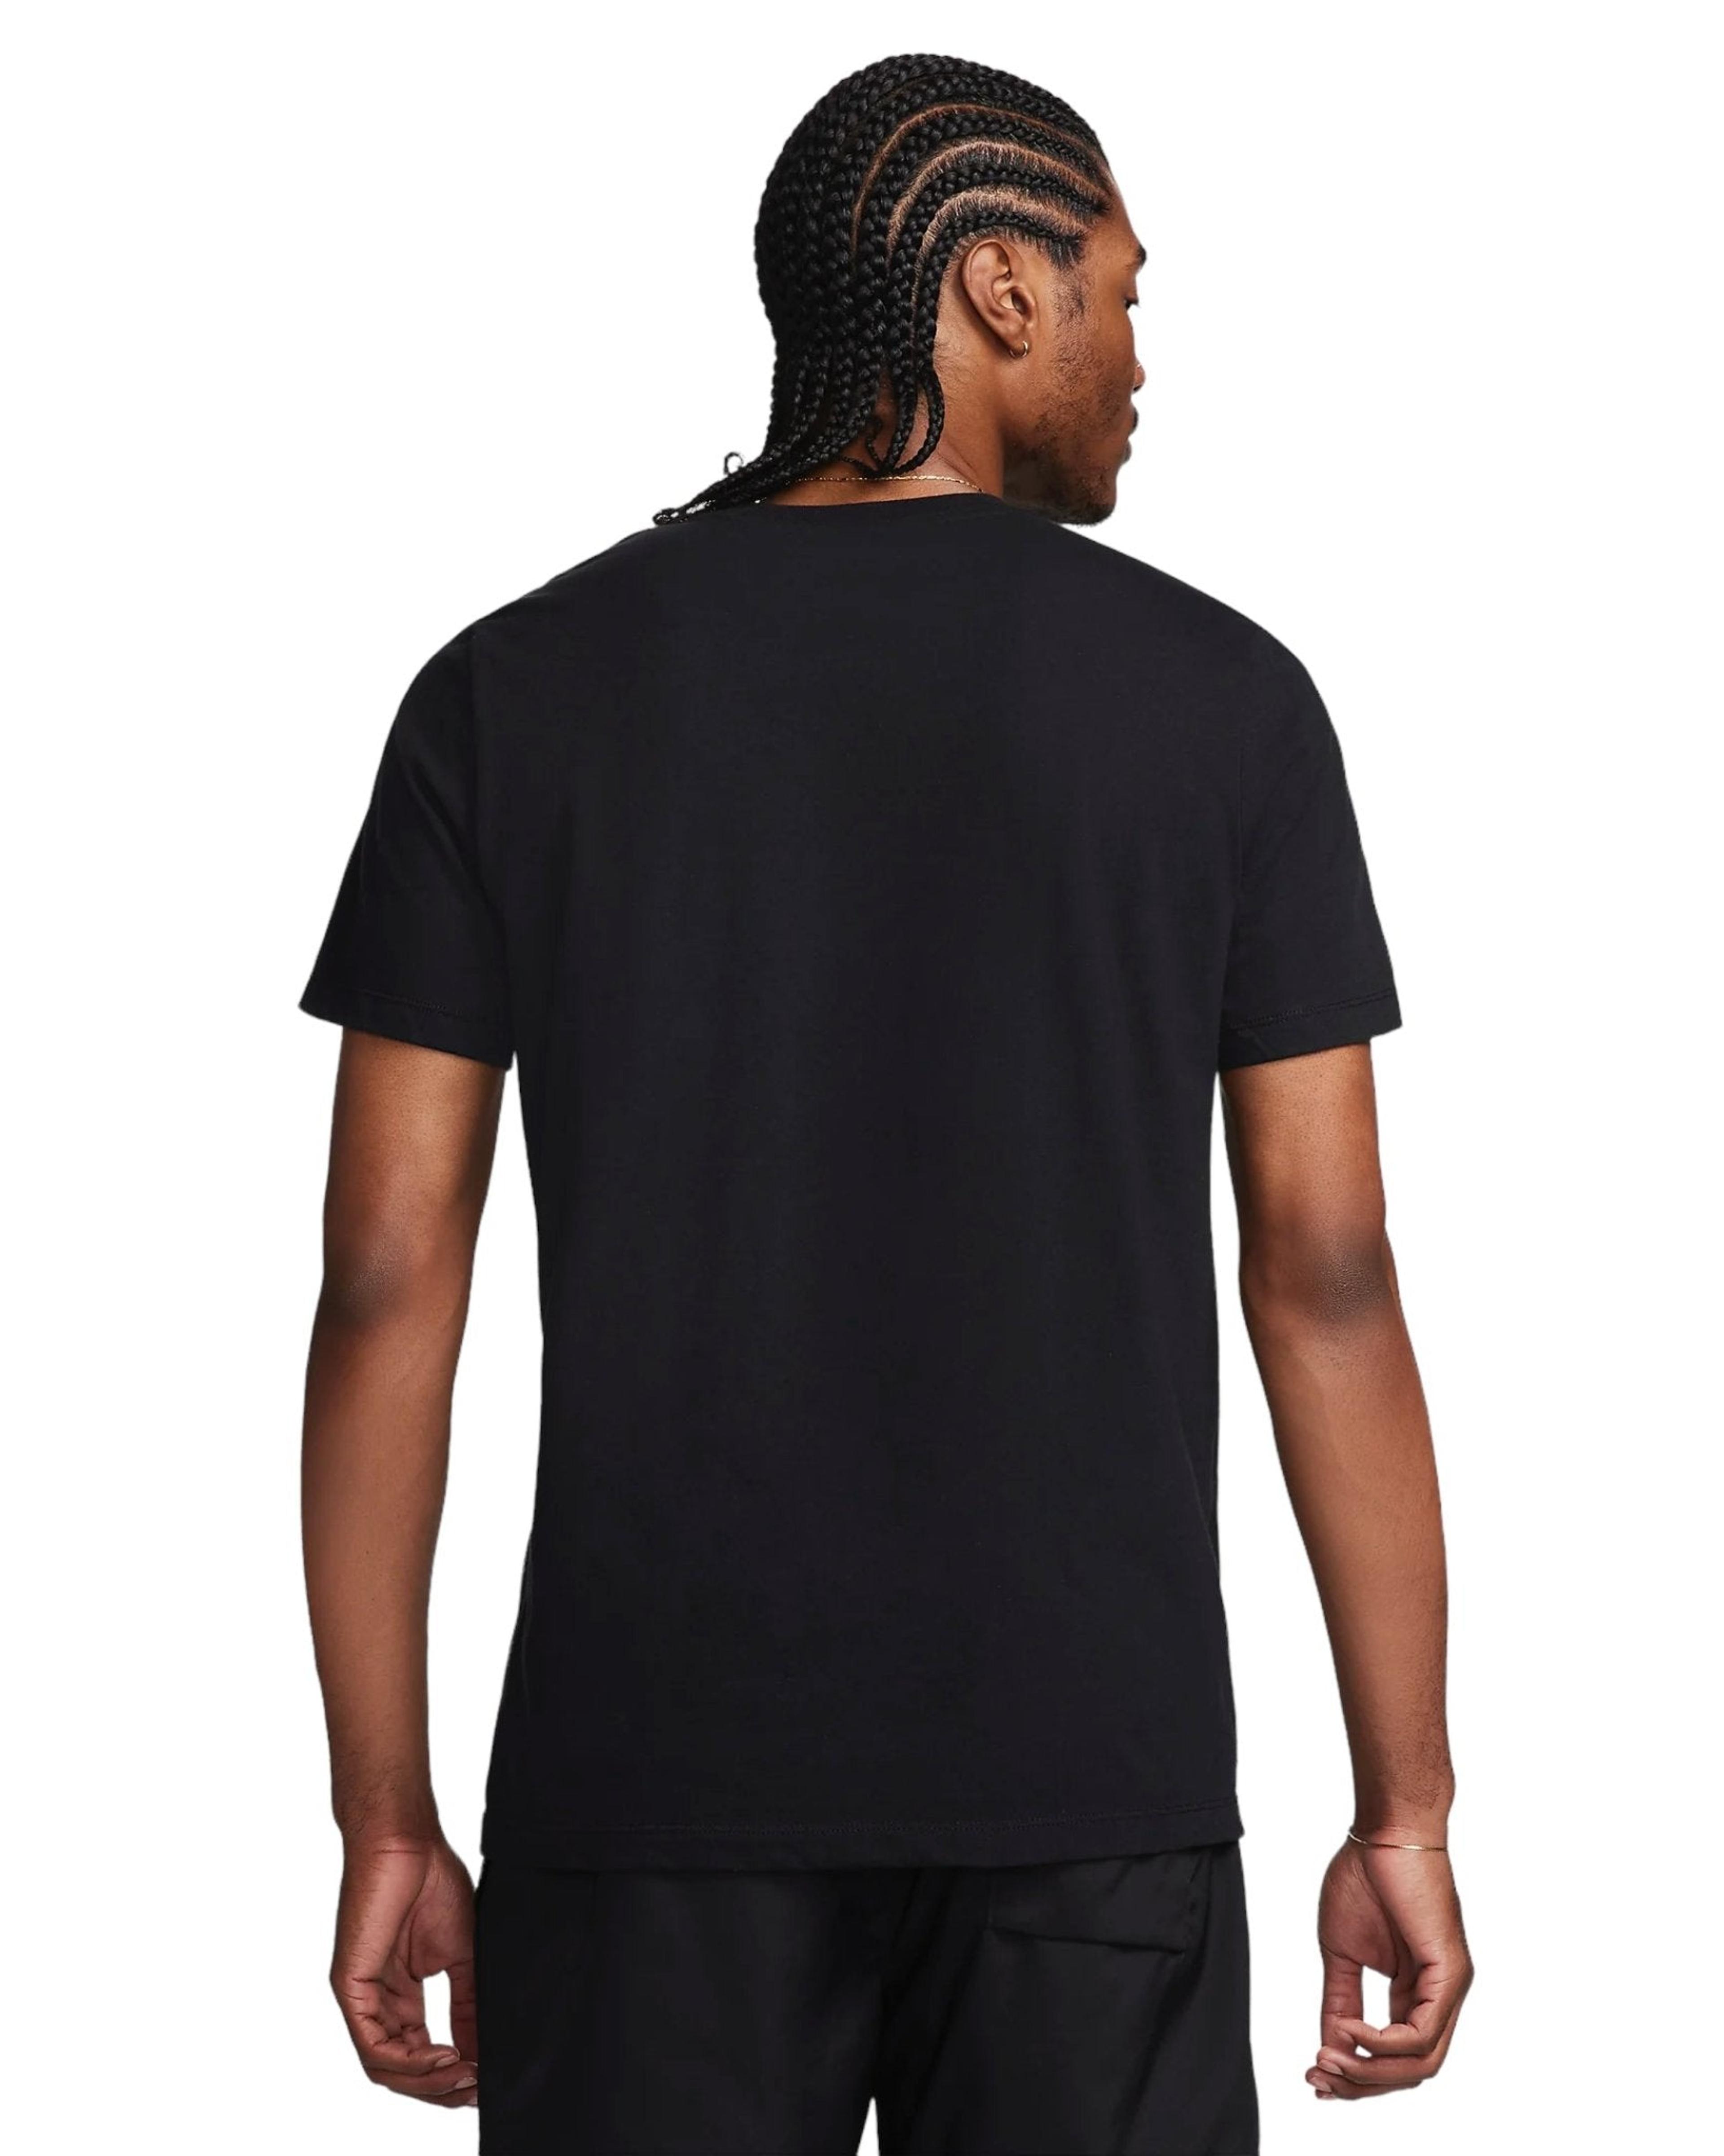 Alternate View 1 of Fortnite x Nike Air Max Men's T-Shirt Black